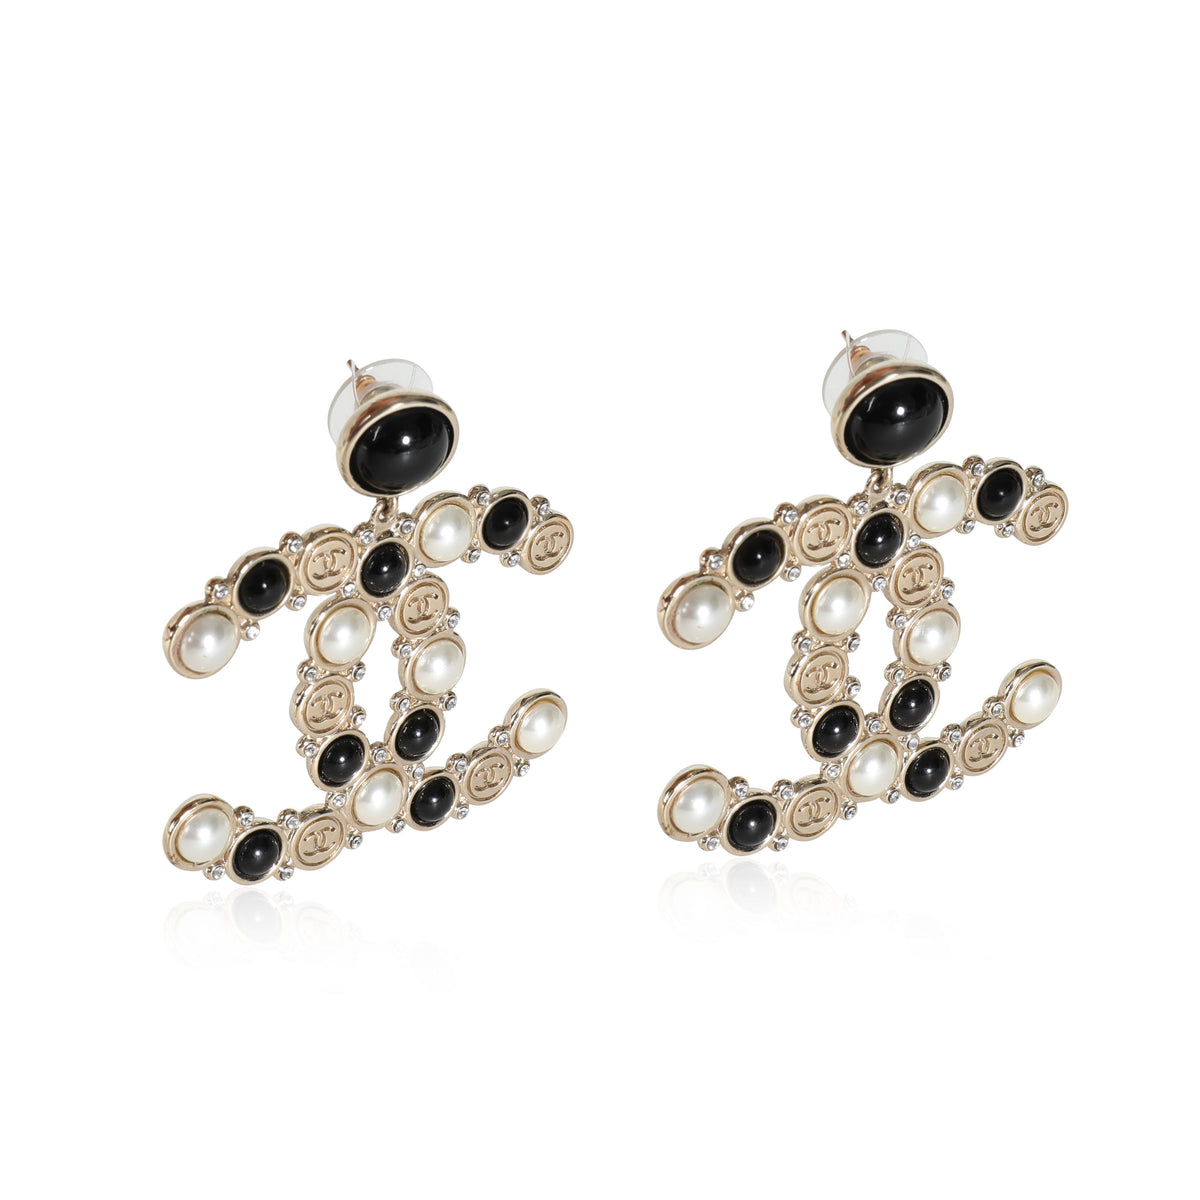 Cc earrings Chanel Gold in Metal - 36261979